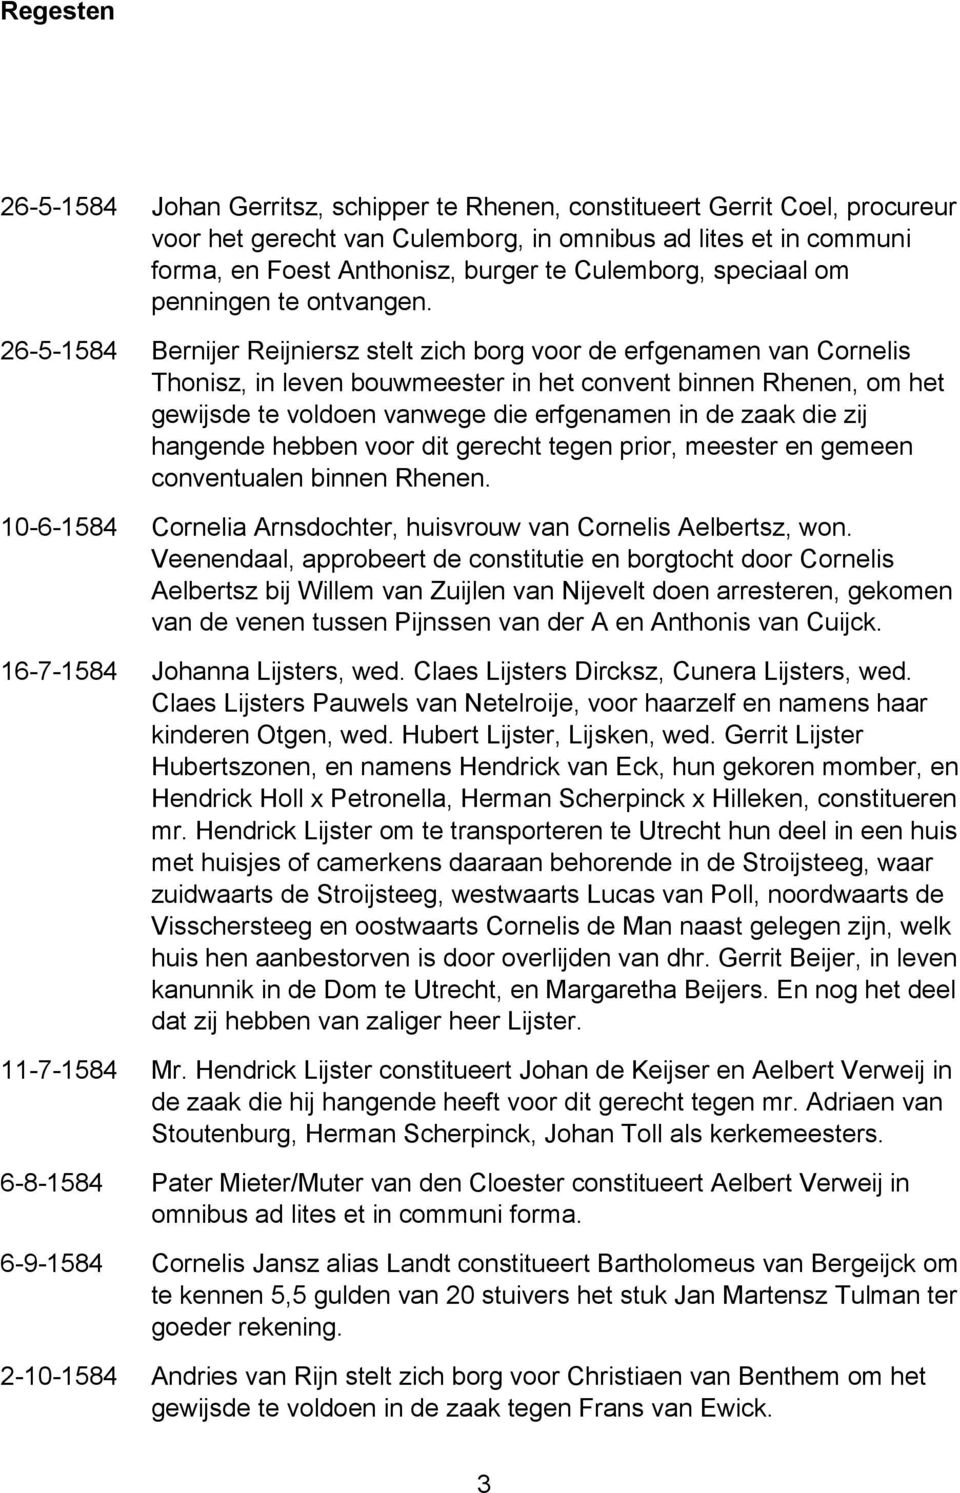 26-5-1584 Bernijer Reijniersz stelt zich borg voor de erfgenamen van Cornelis Thonisz, in leven bouwmeester in het convent binnen Rhenen, om het gewijsde te voldoen vanwege die erfgenamen in de zaak